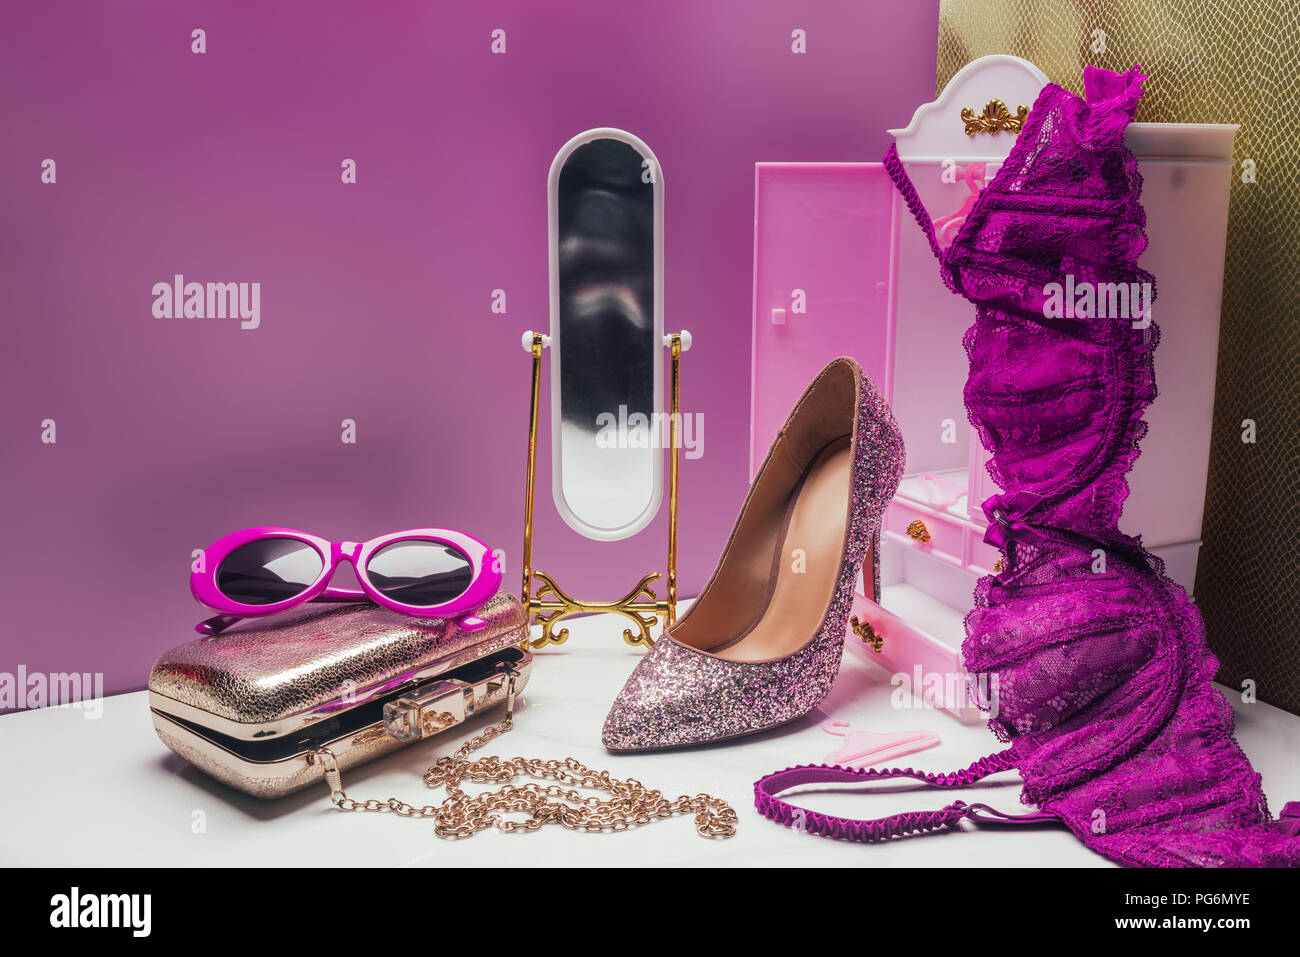 Armoire et miroir jouet avec accessoires femme élégante taille réelle en miniature chambre rose Banque D'Images